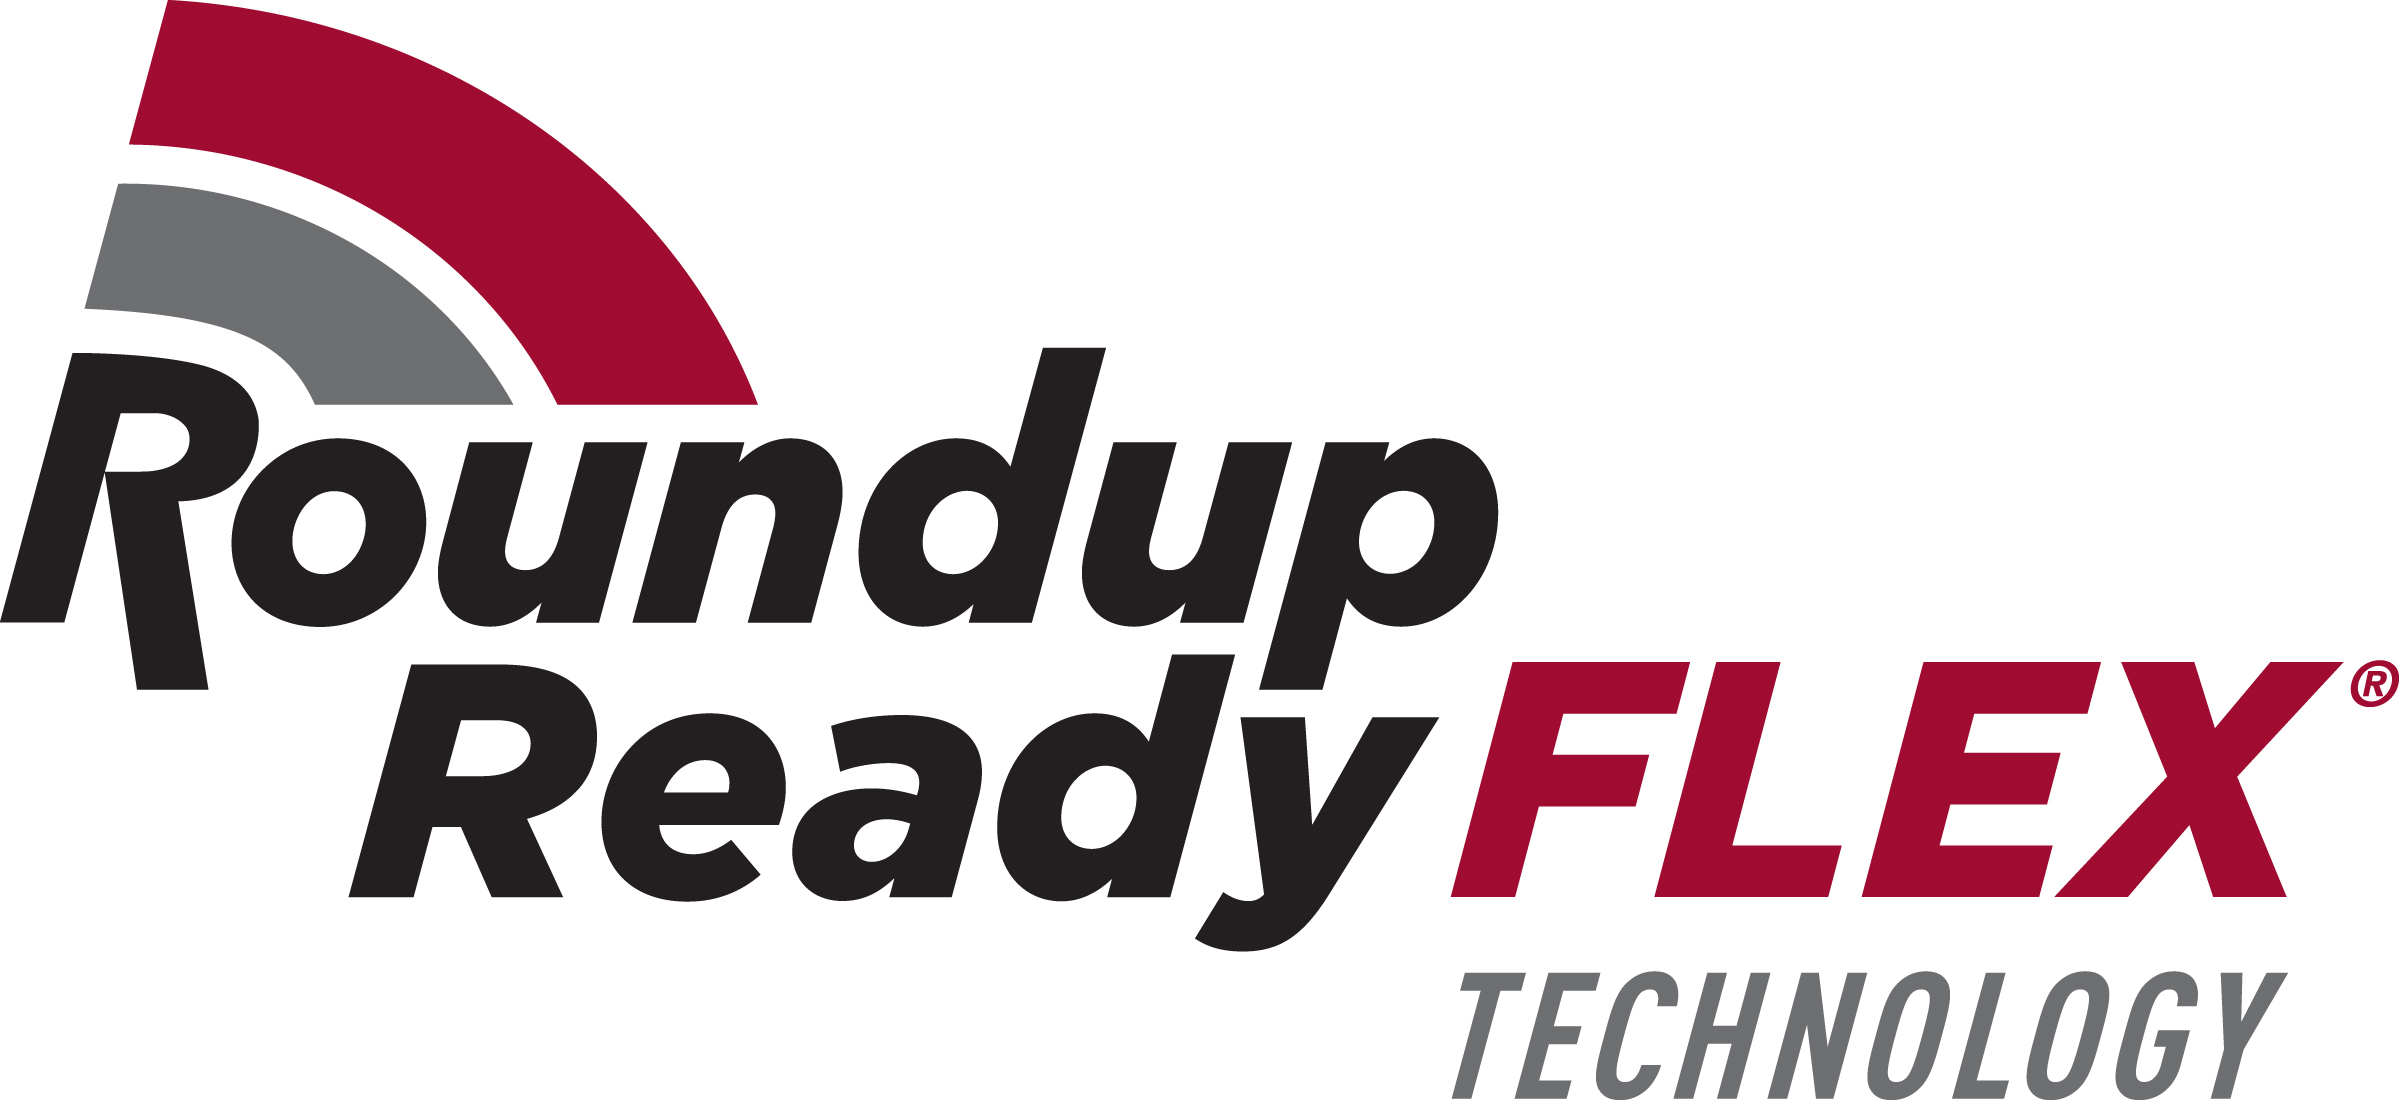 Roundup Ready Flex Cotton Logo - Corn States